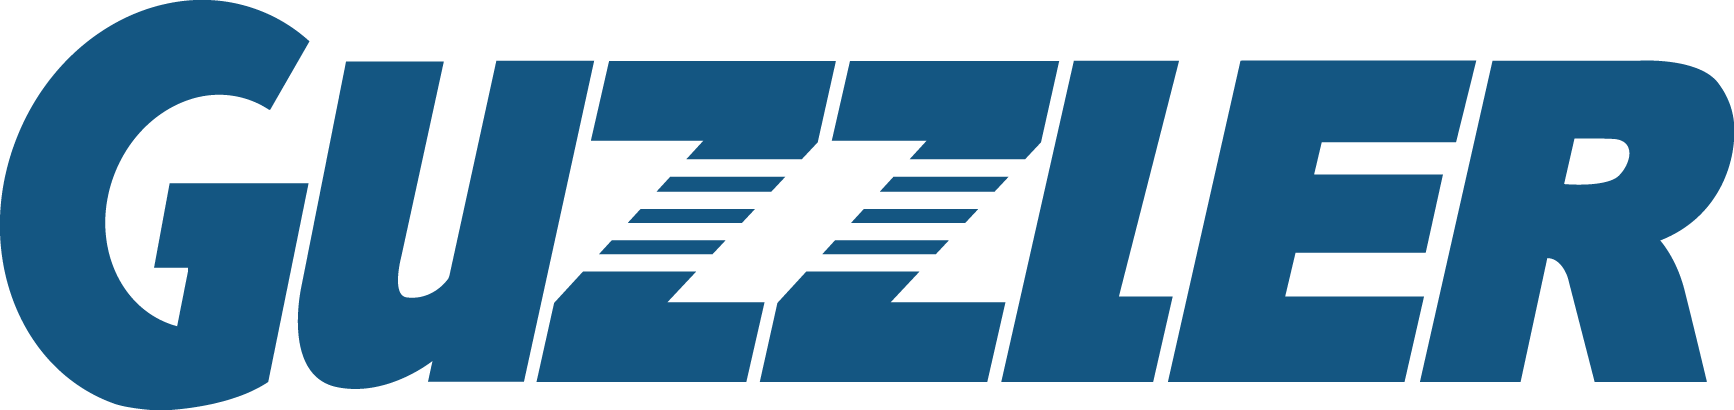 Guzzler Logo